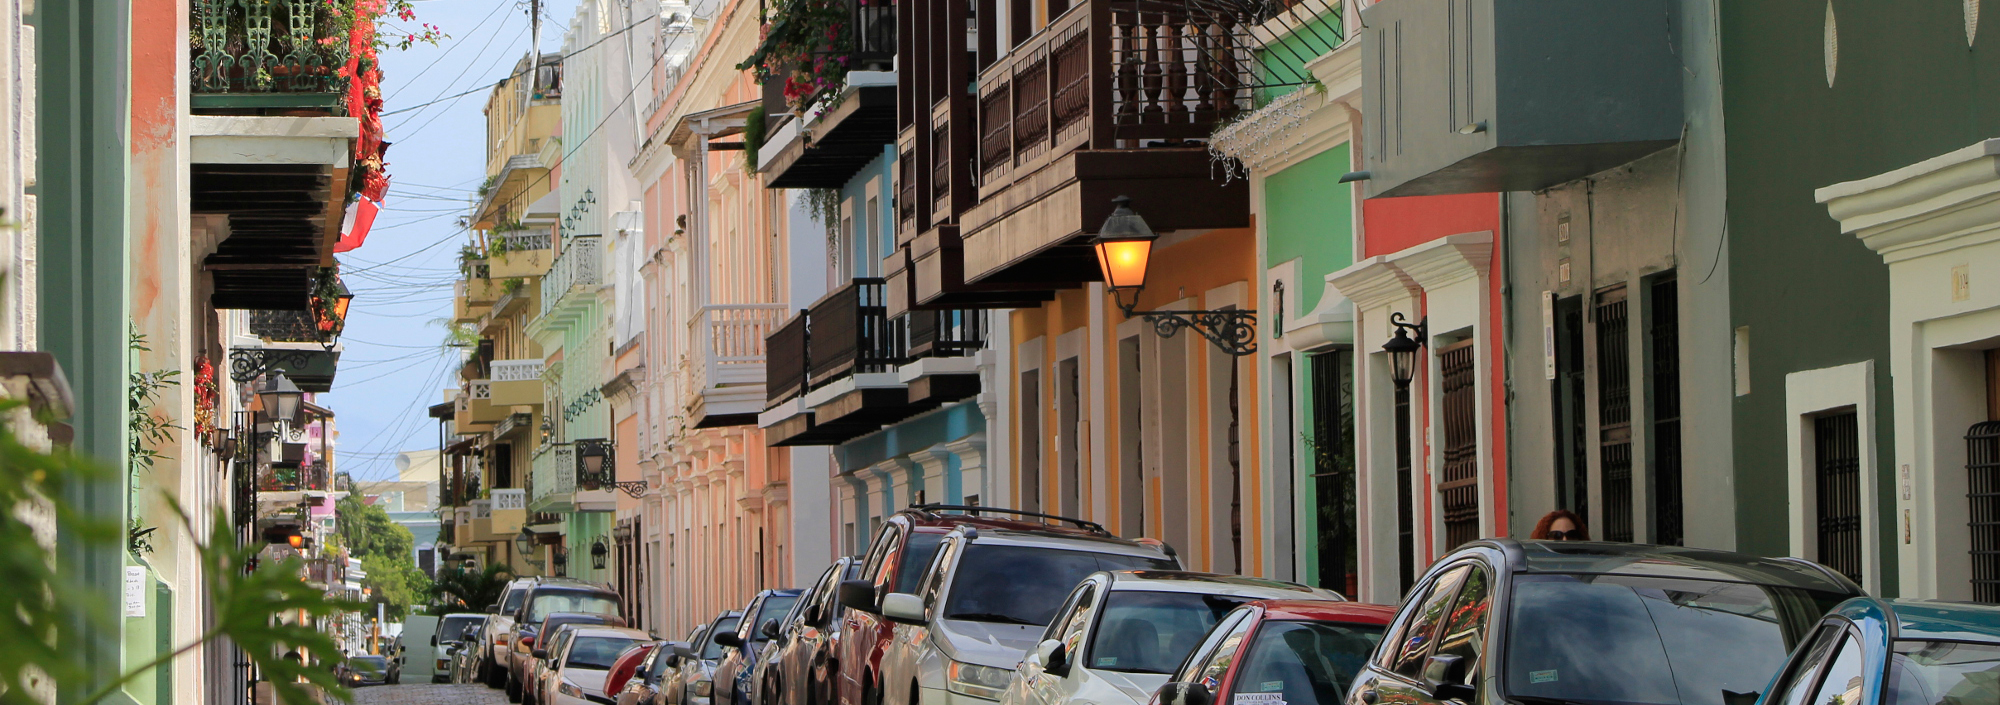 Altstadt von San Juan auf Puerto Rico